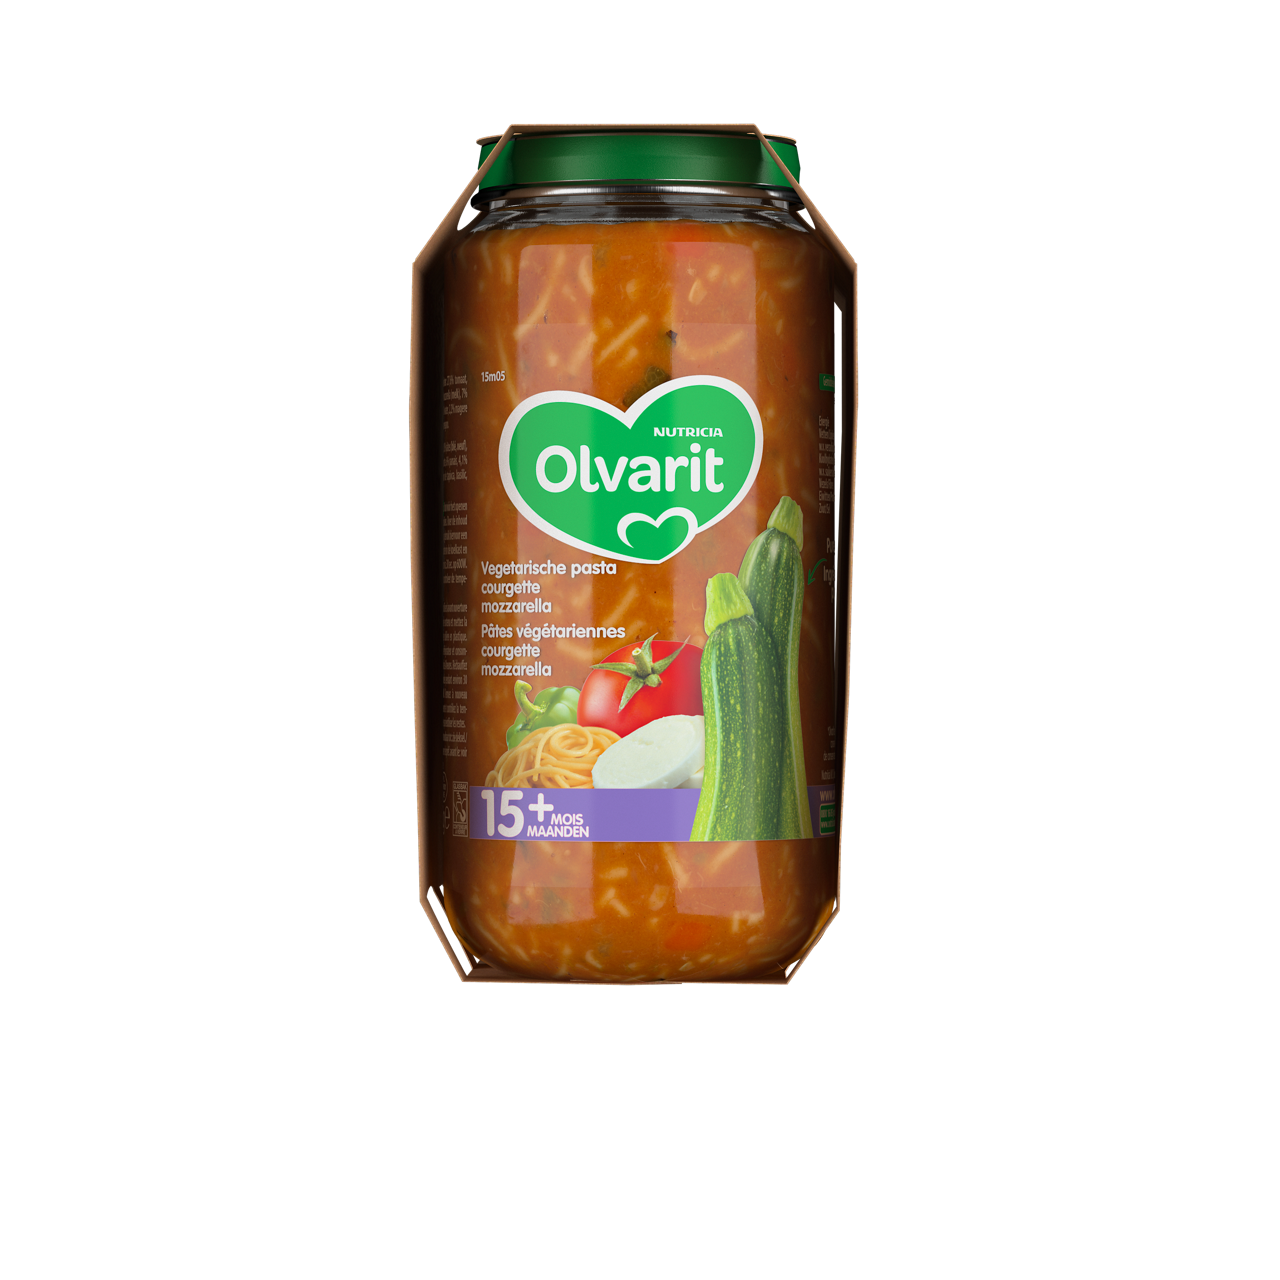 Consultez notre site web Olvarit.be pour plus d'info sur alimentation pour bébé et les produits Olvarit.